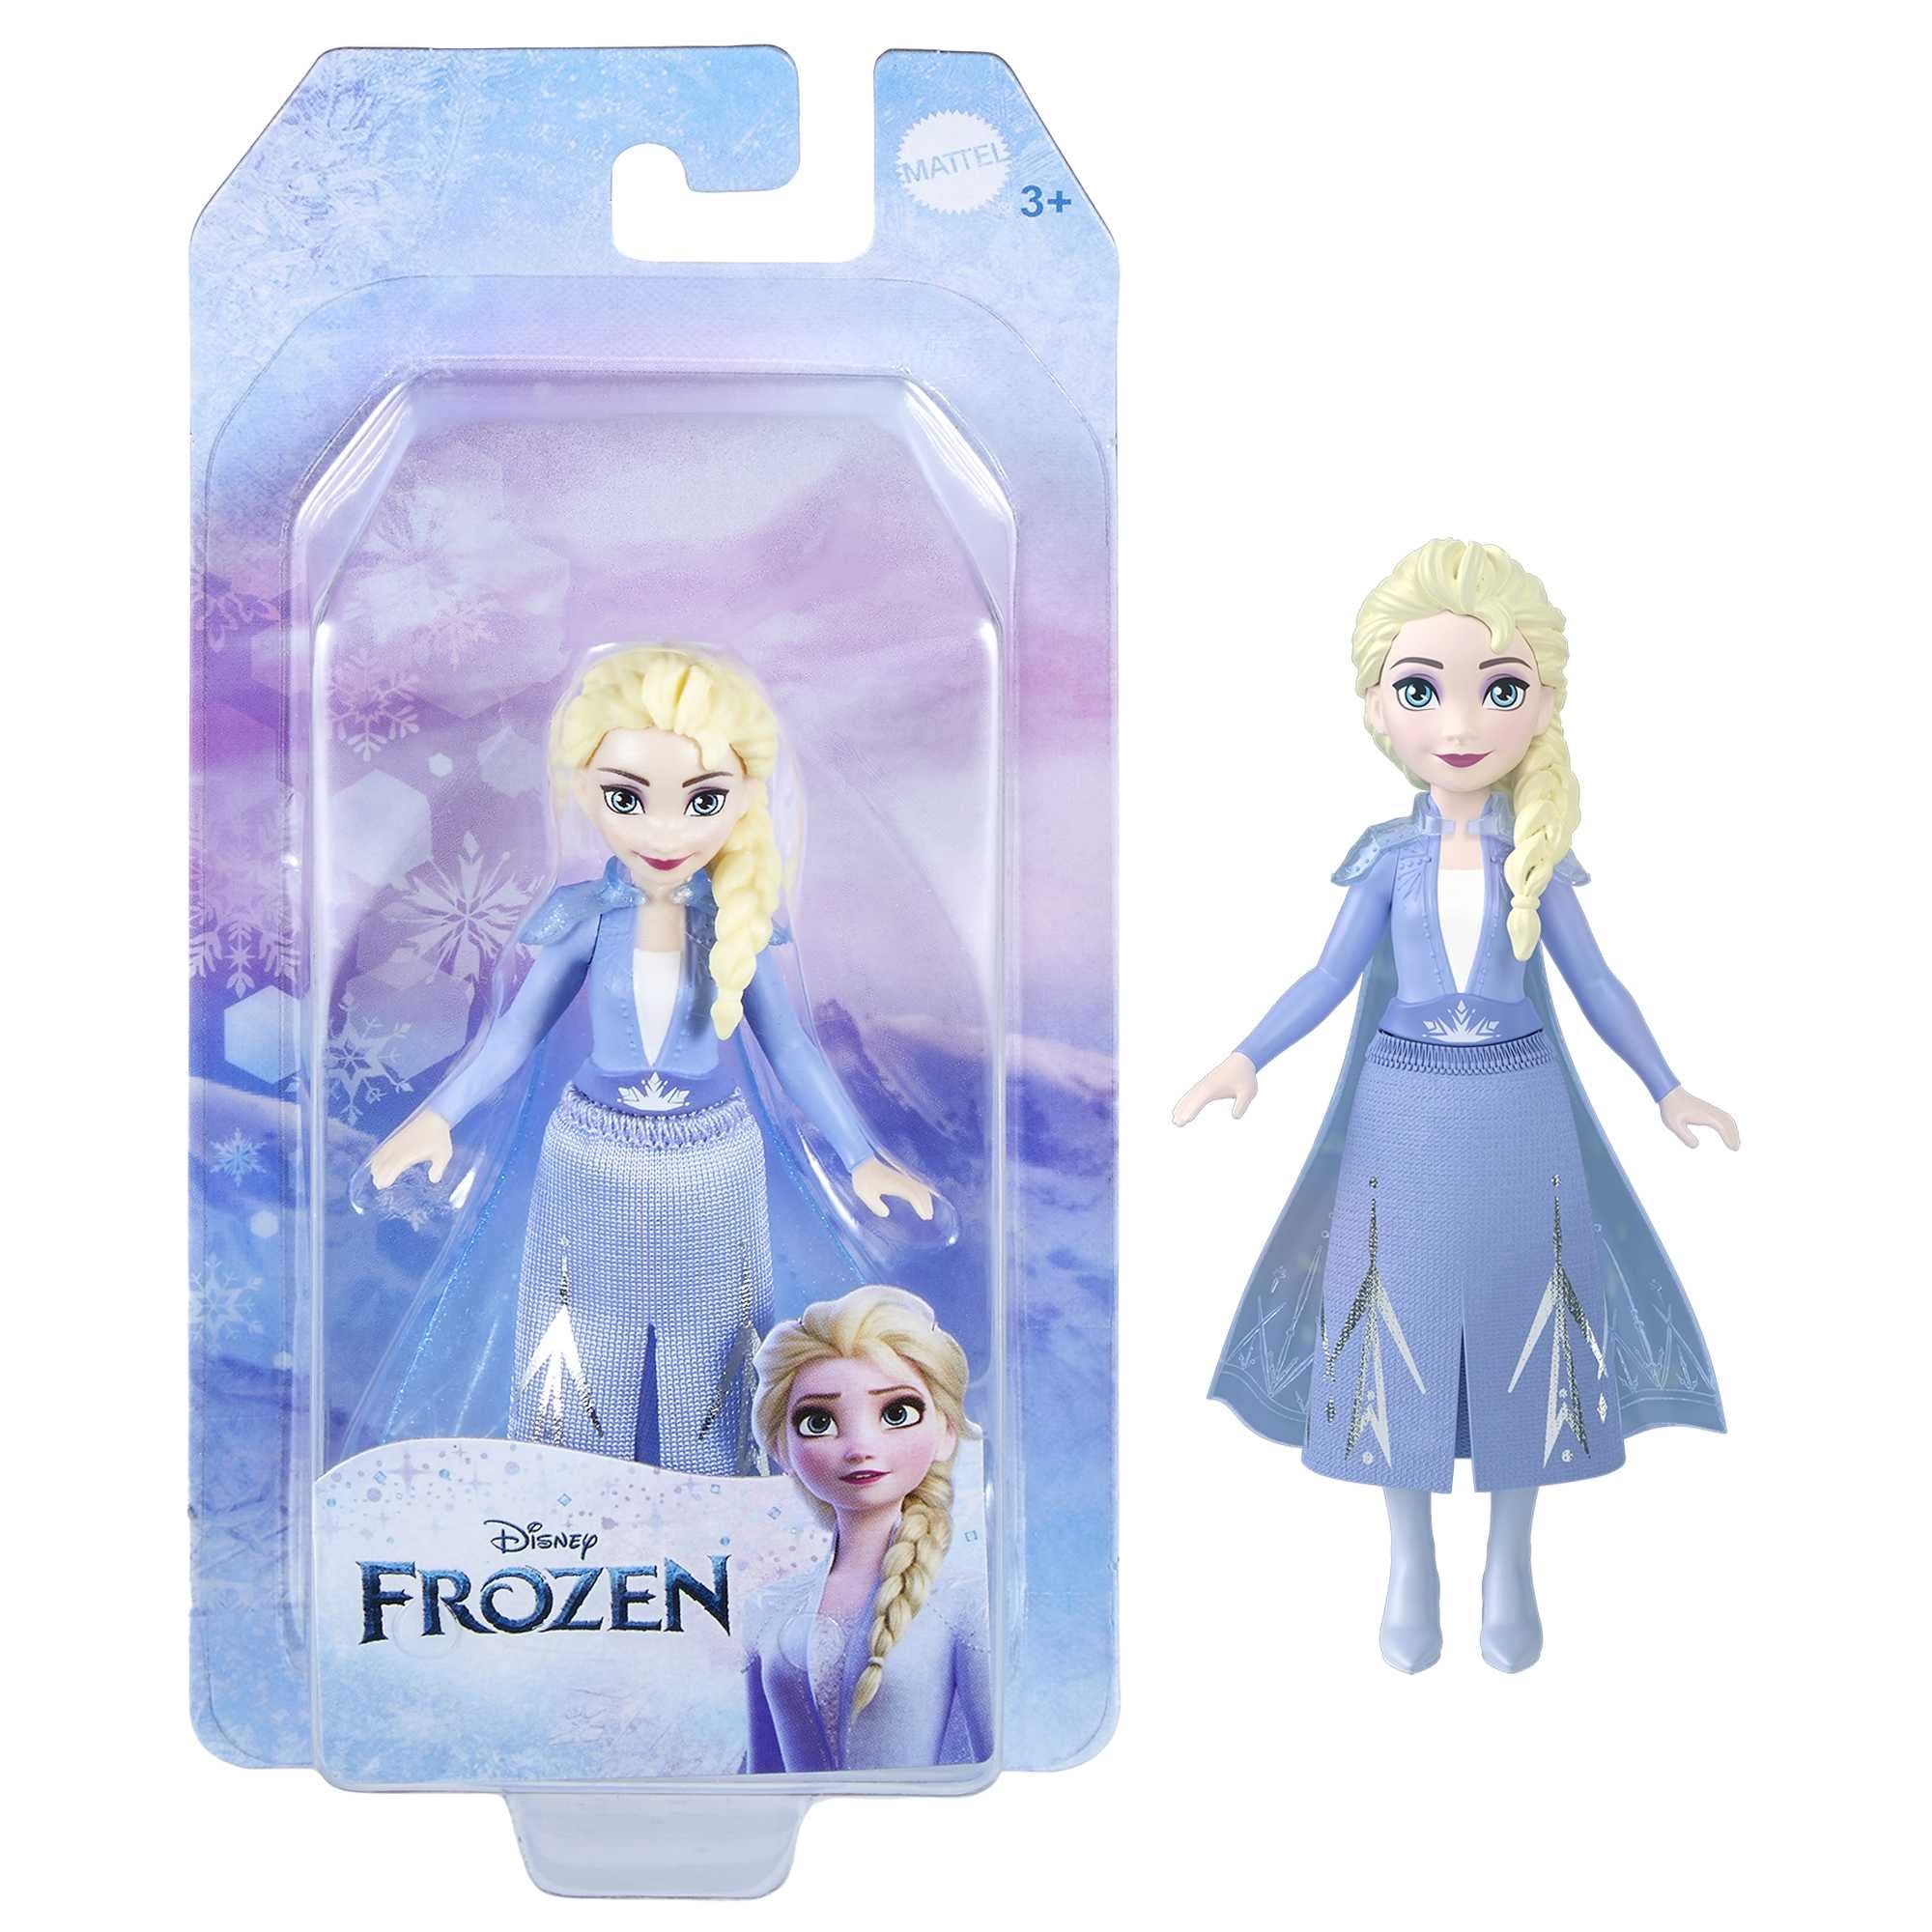 Elsa Disney Frozen Figure